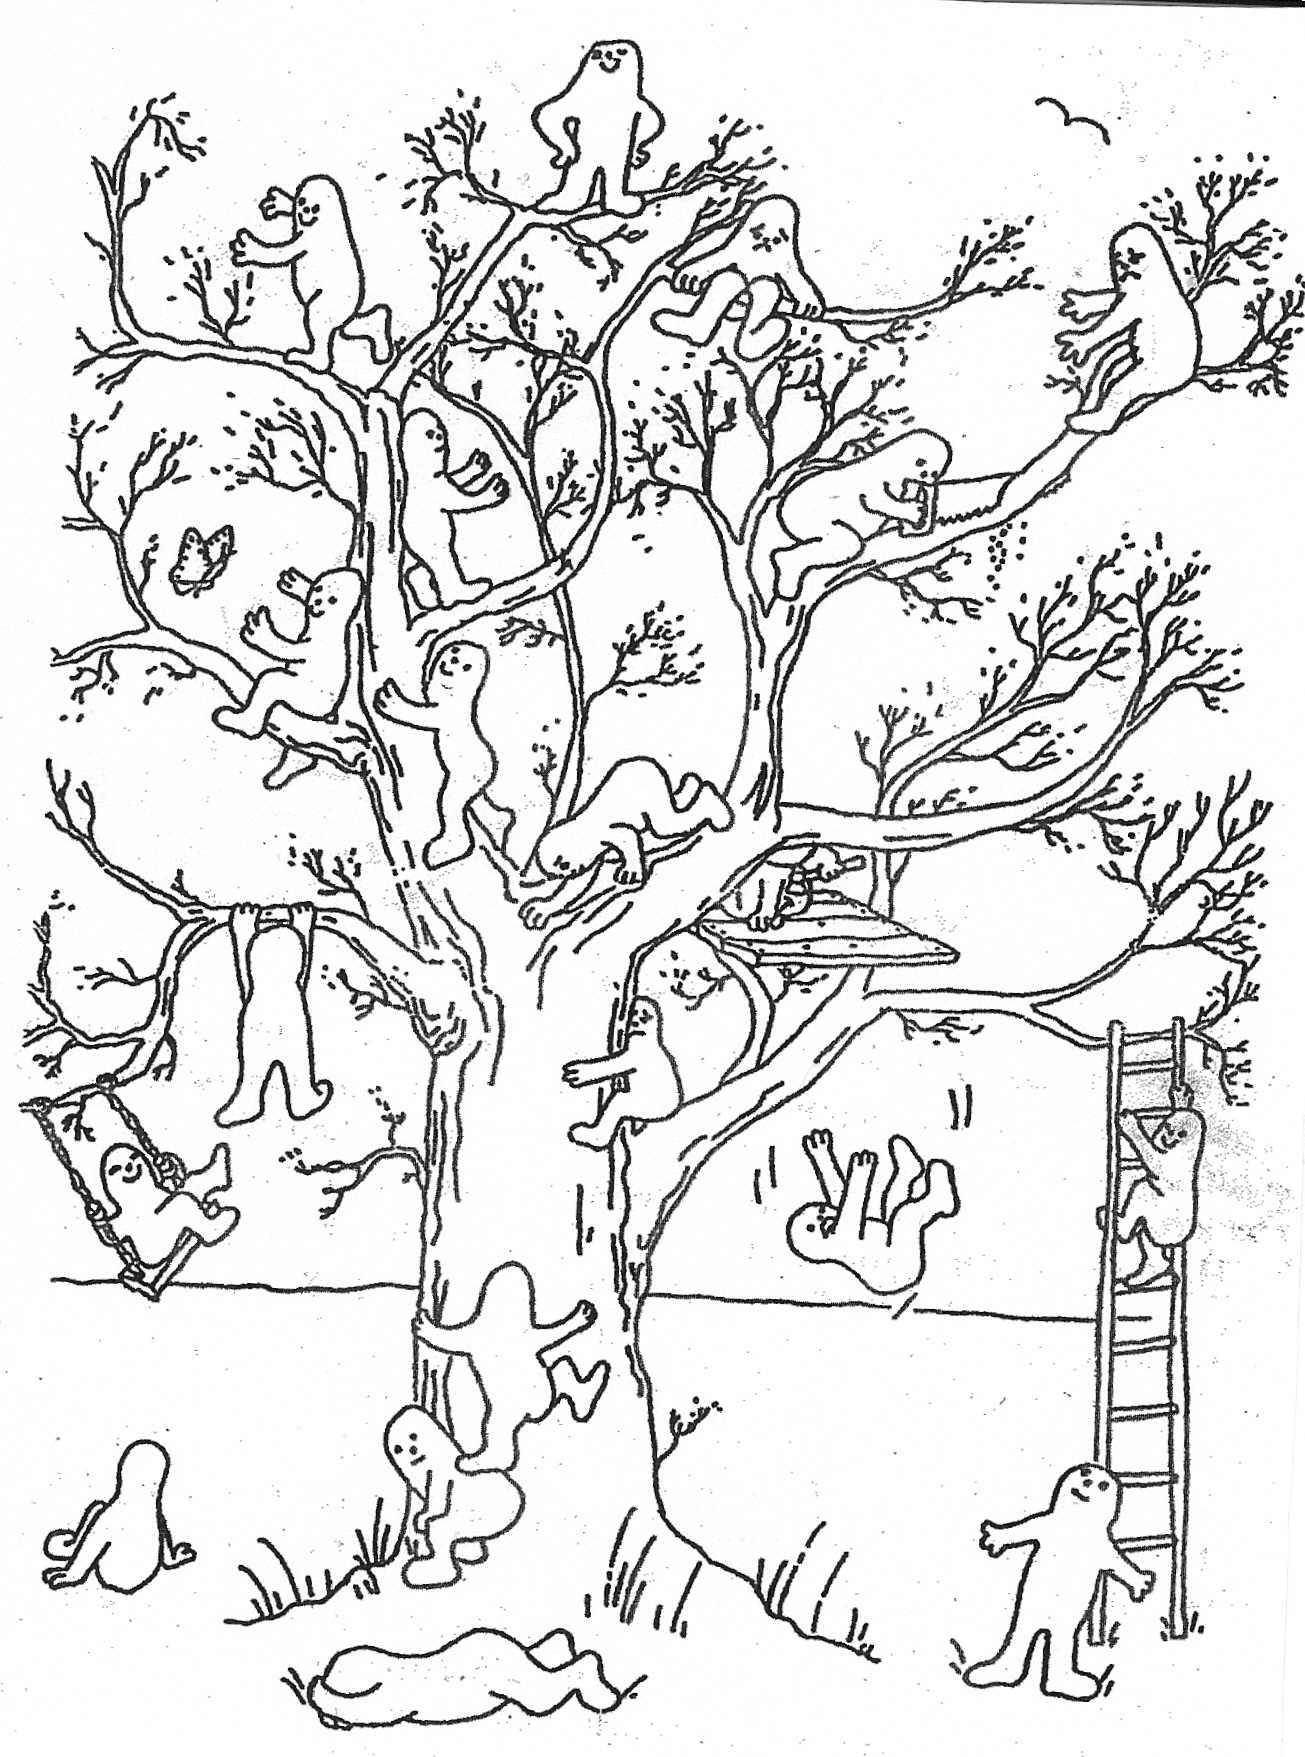 Тест рисуночные методики. Рисуночный тест дерево. Проективная методика тест дерево. Проективная методика дерево с человечками. Методика самооценки дерево д Лампен.